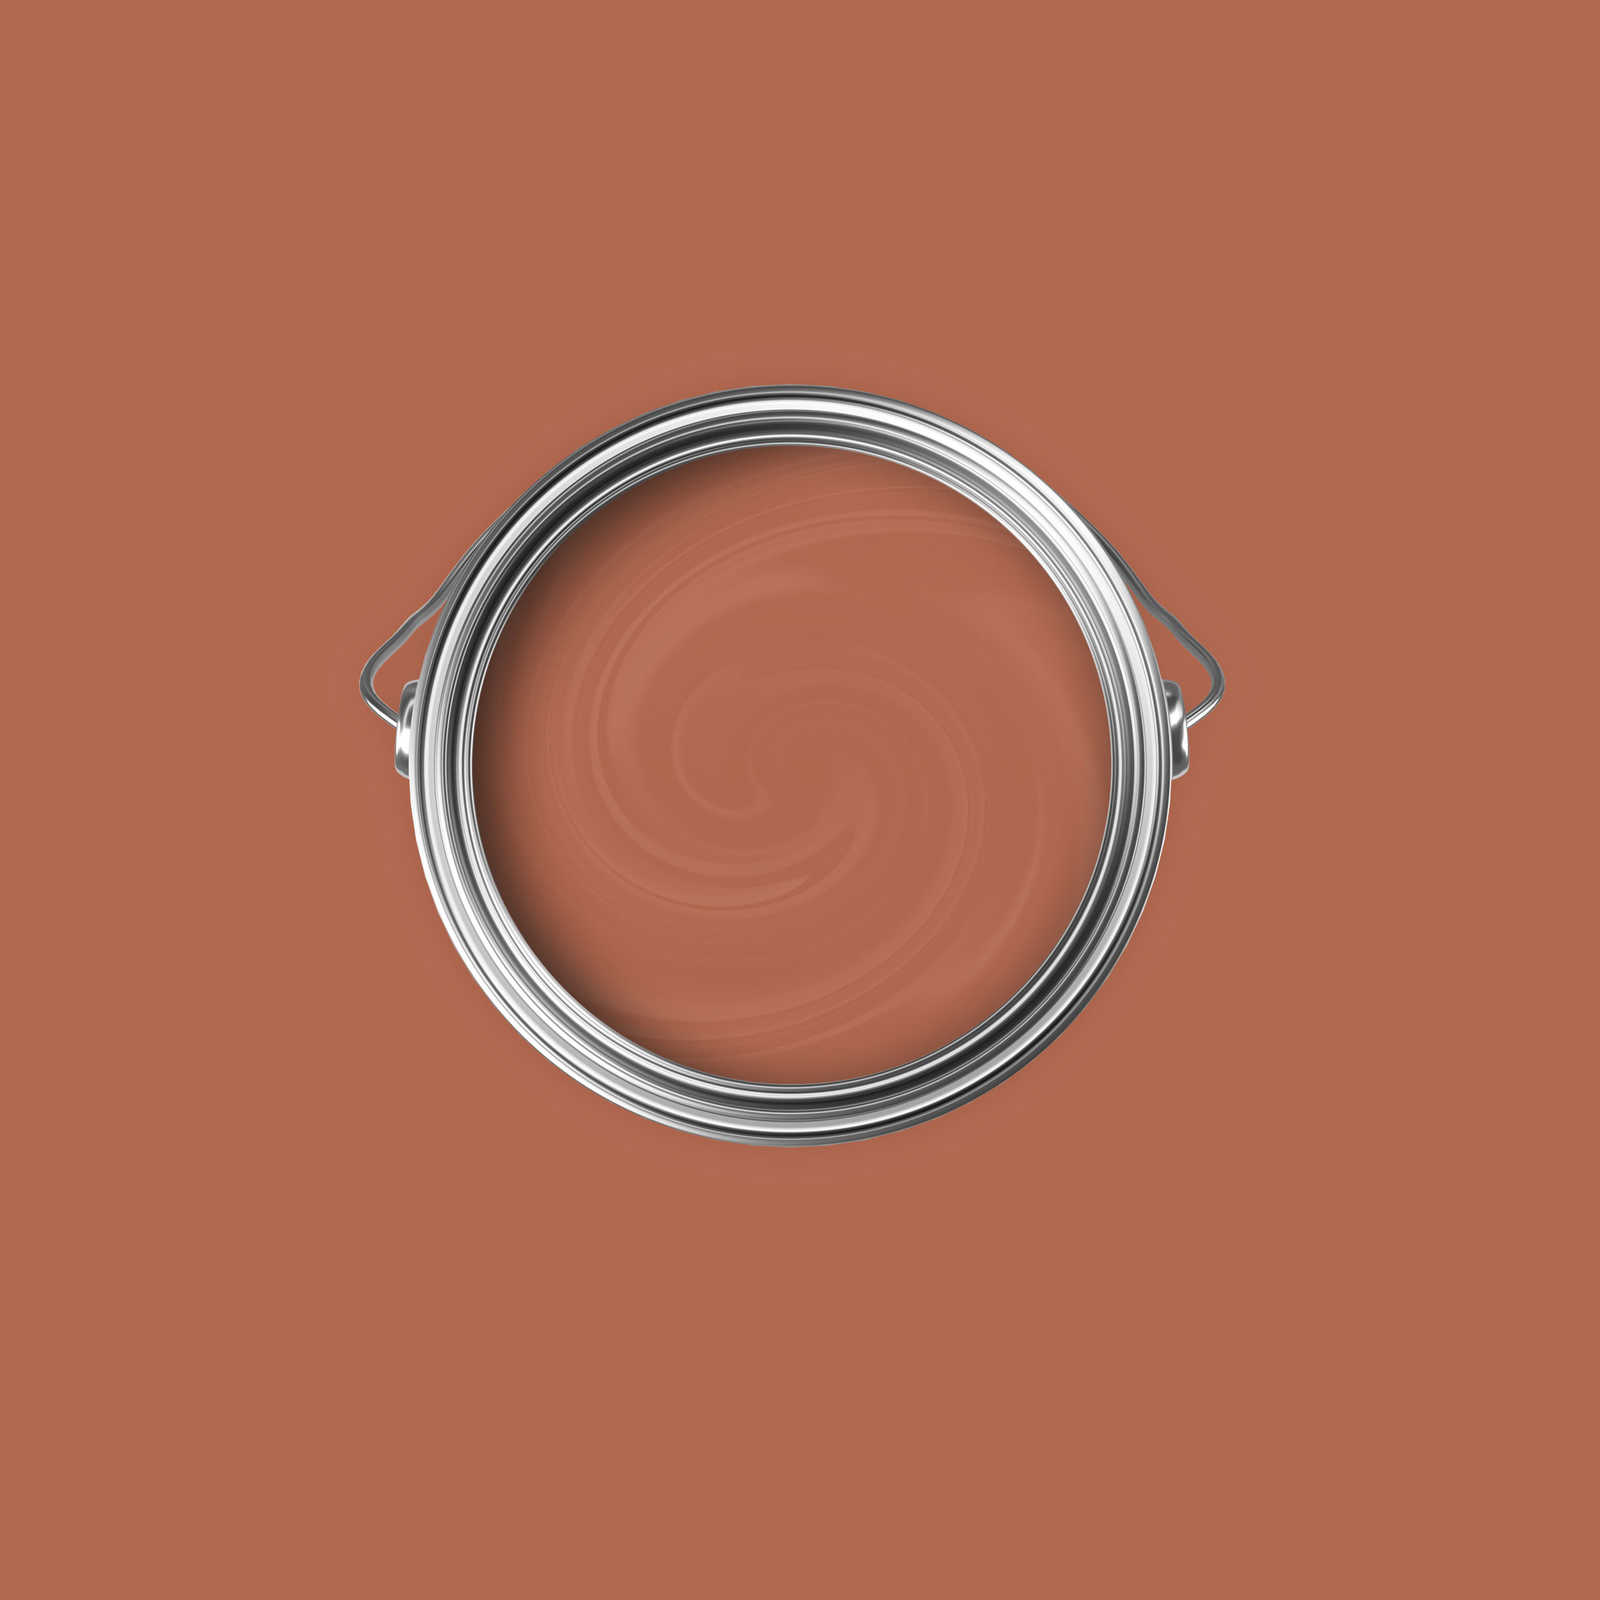             Premium Wandfarbe einfühlsames Terracotta »Pretty Peach« NW908 – 2,5 Liter
        